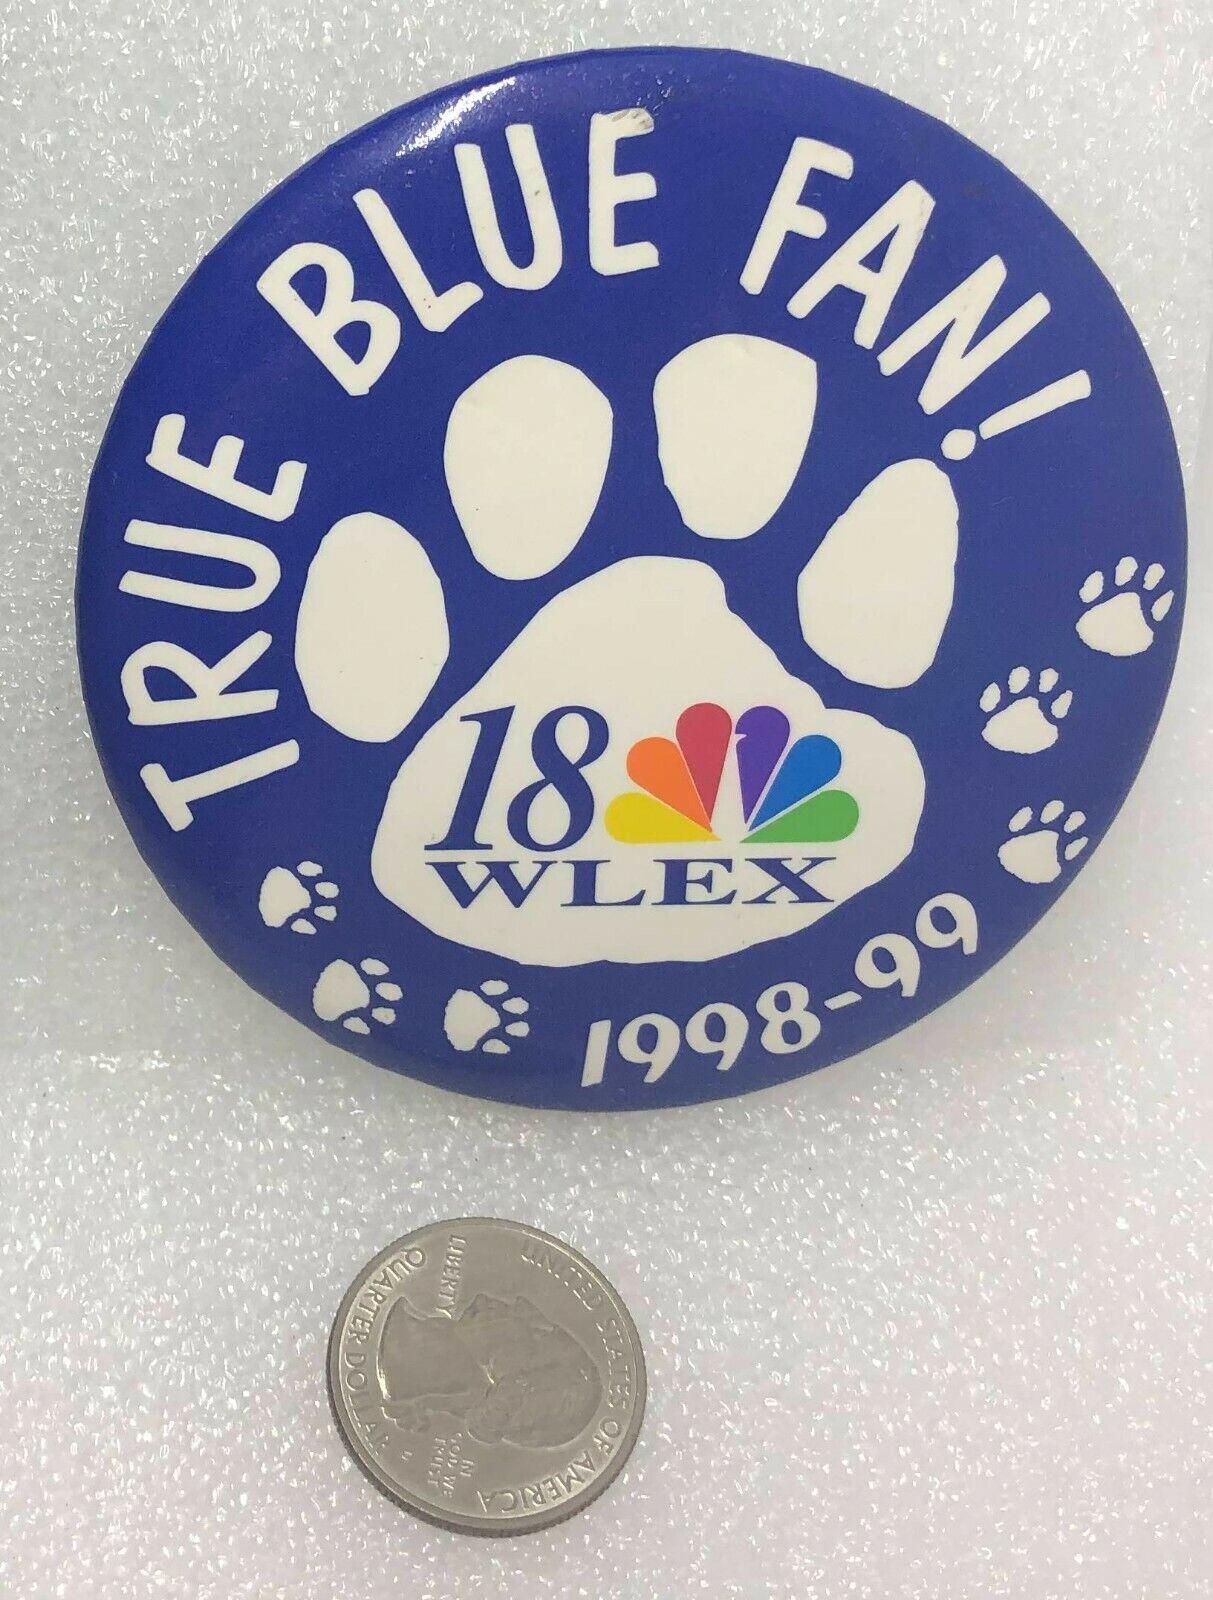 1998-99 WLEX NBC Channel 18 Kentucky Wildcats - True Blue Fan Button Pin